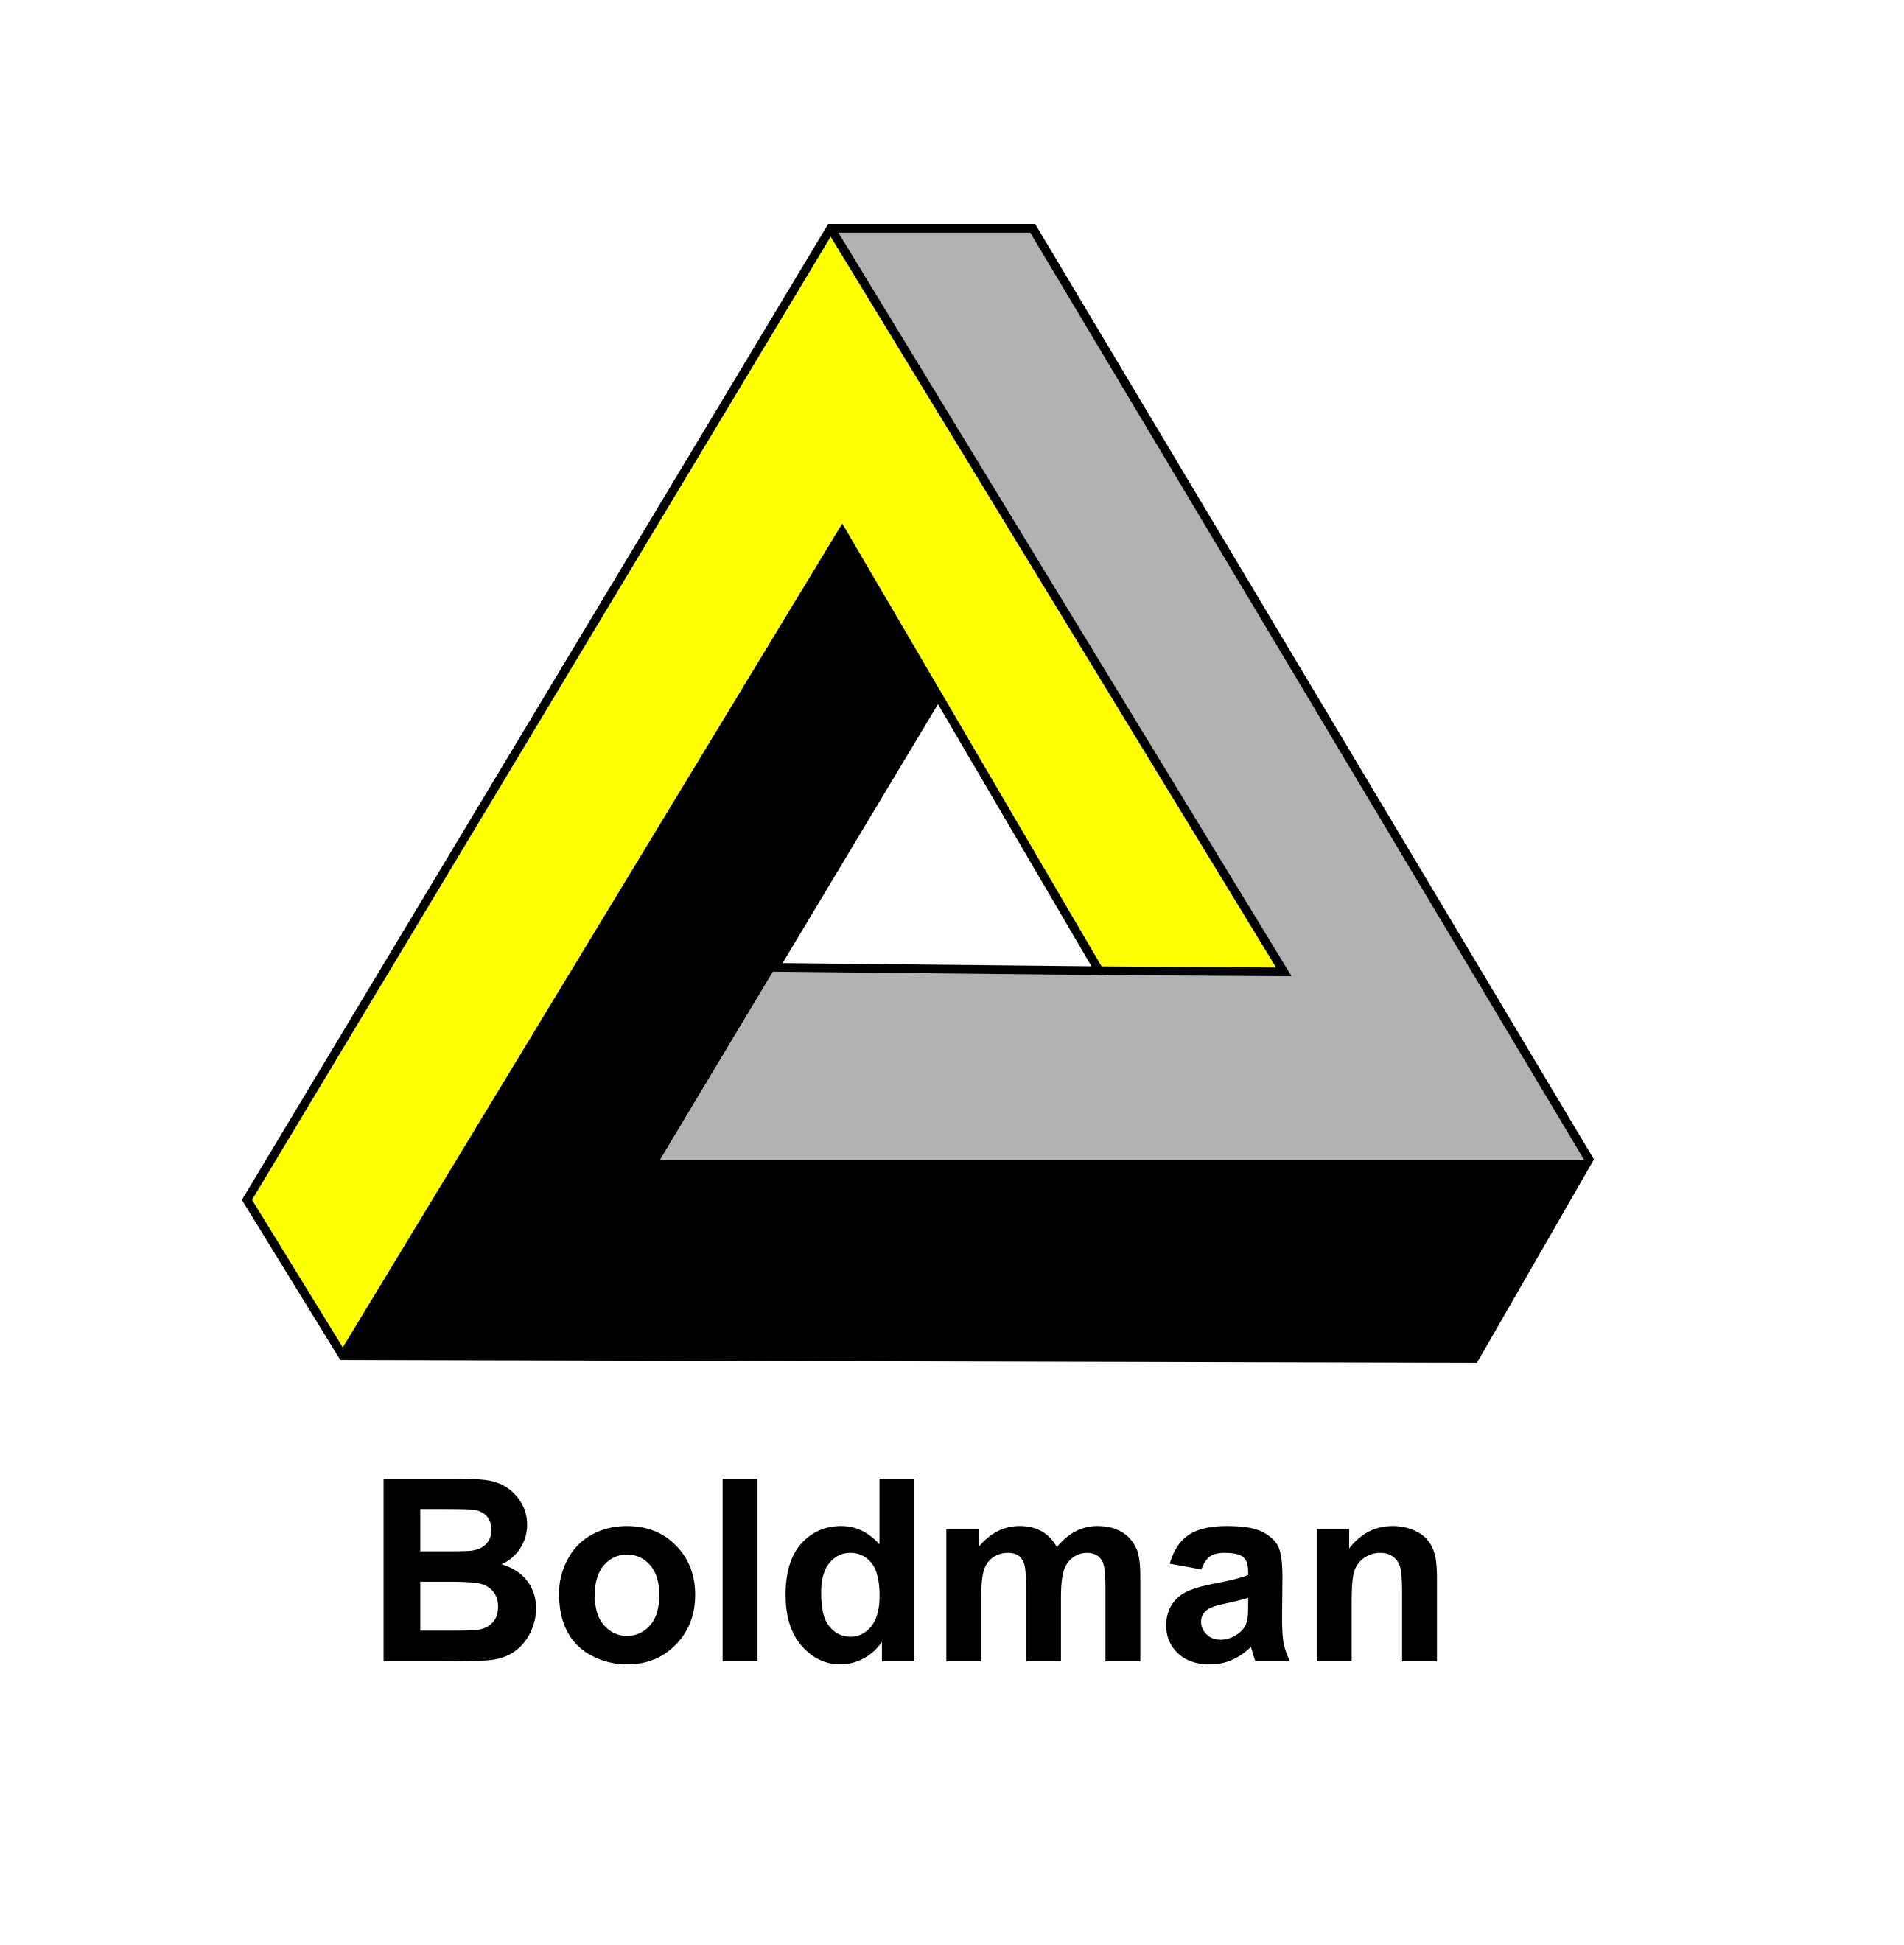 Boldman